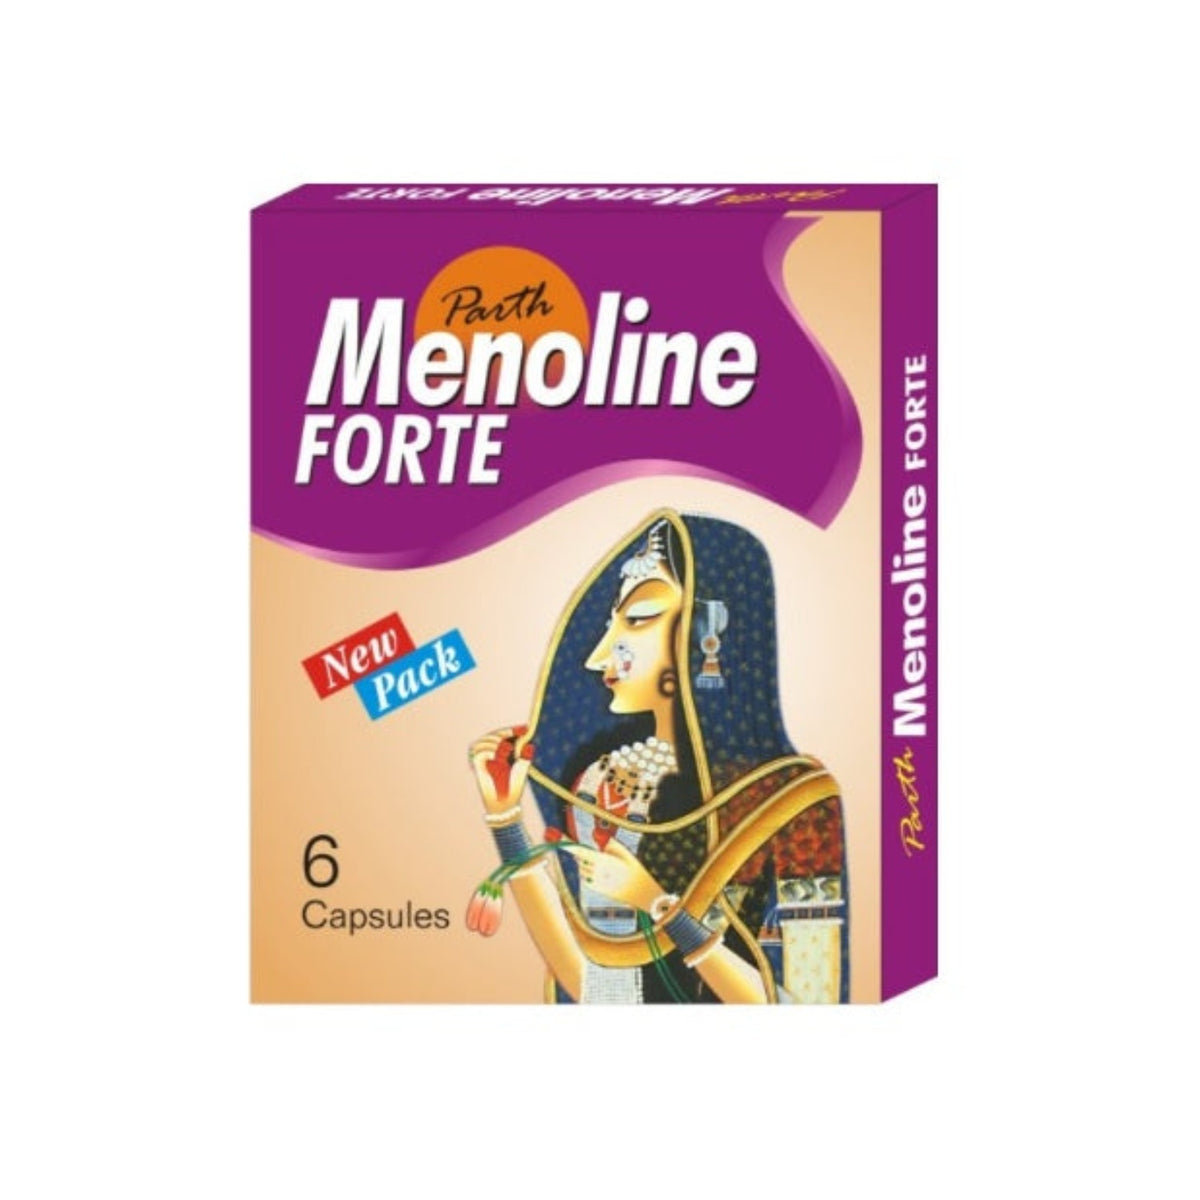 Parth Ayurvedic Menoline Forte Female Wellness 6 Capsule